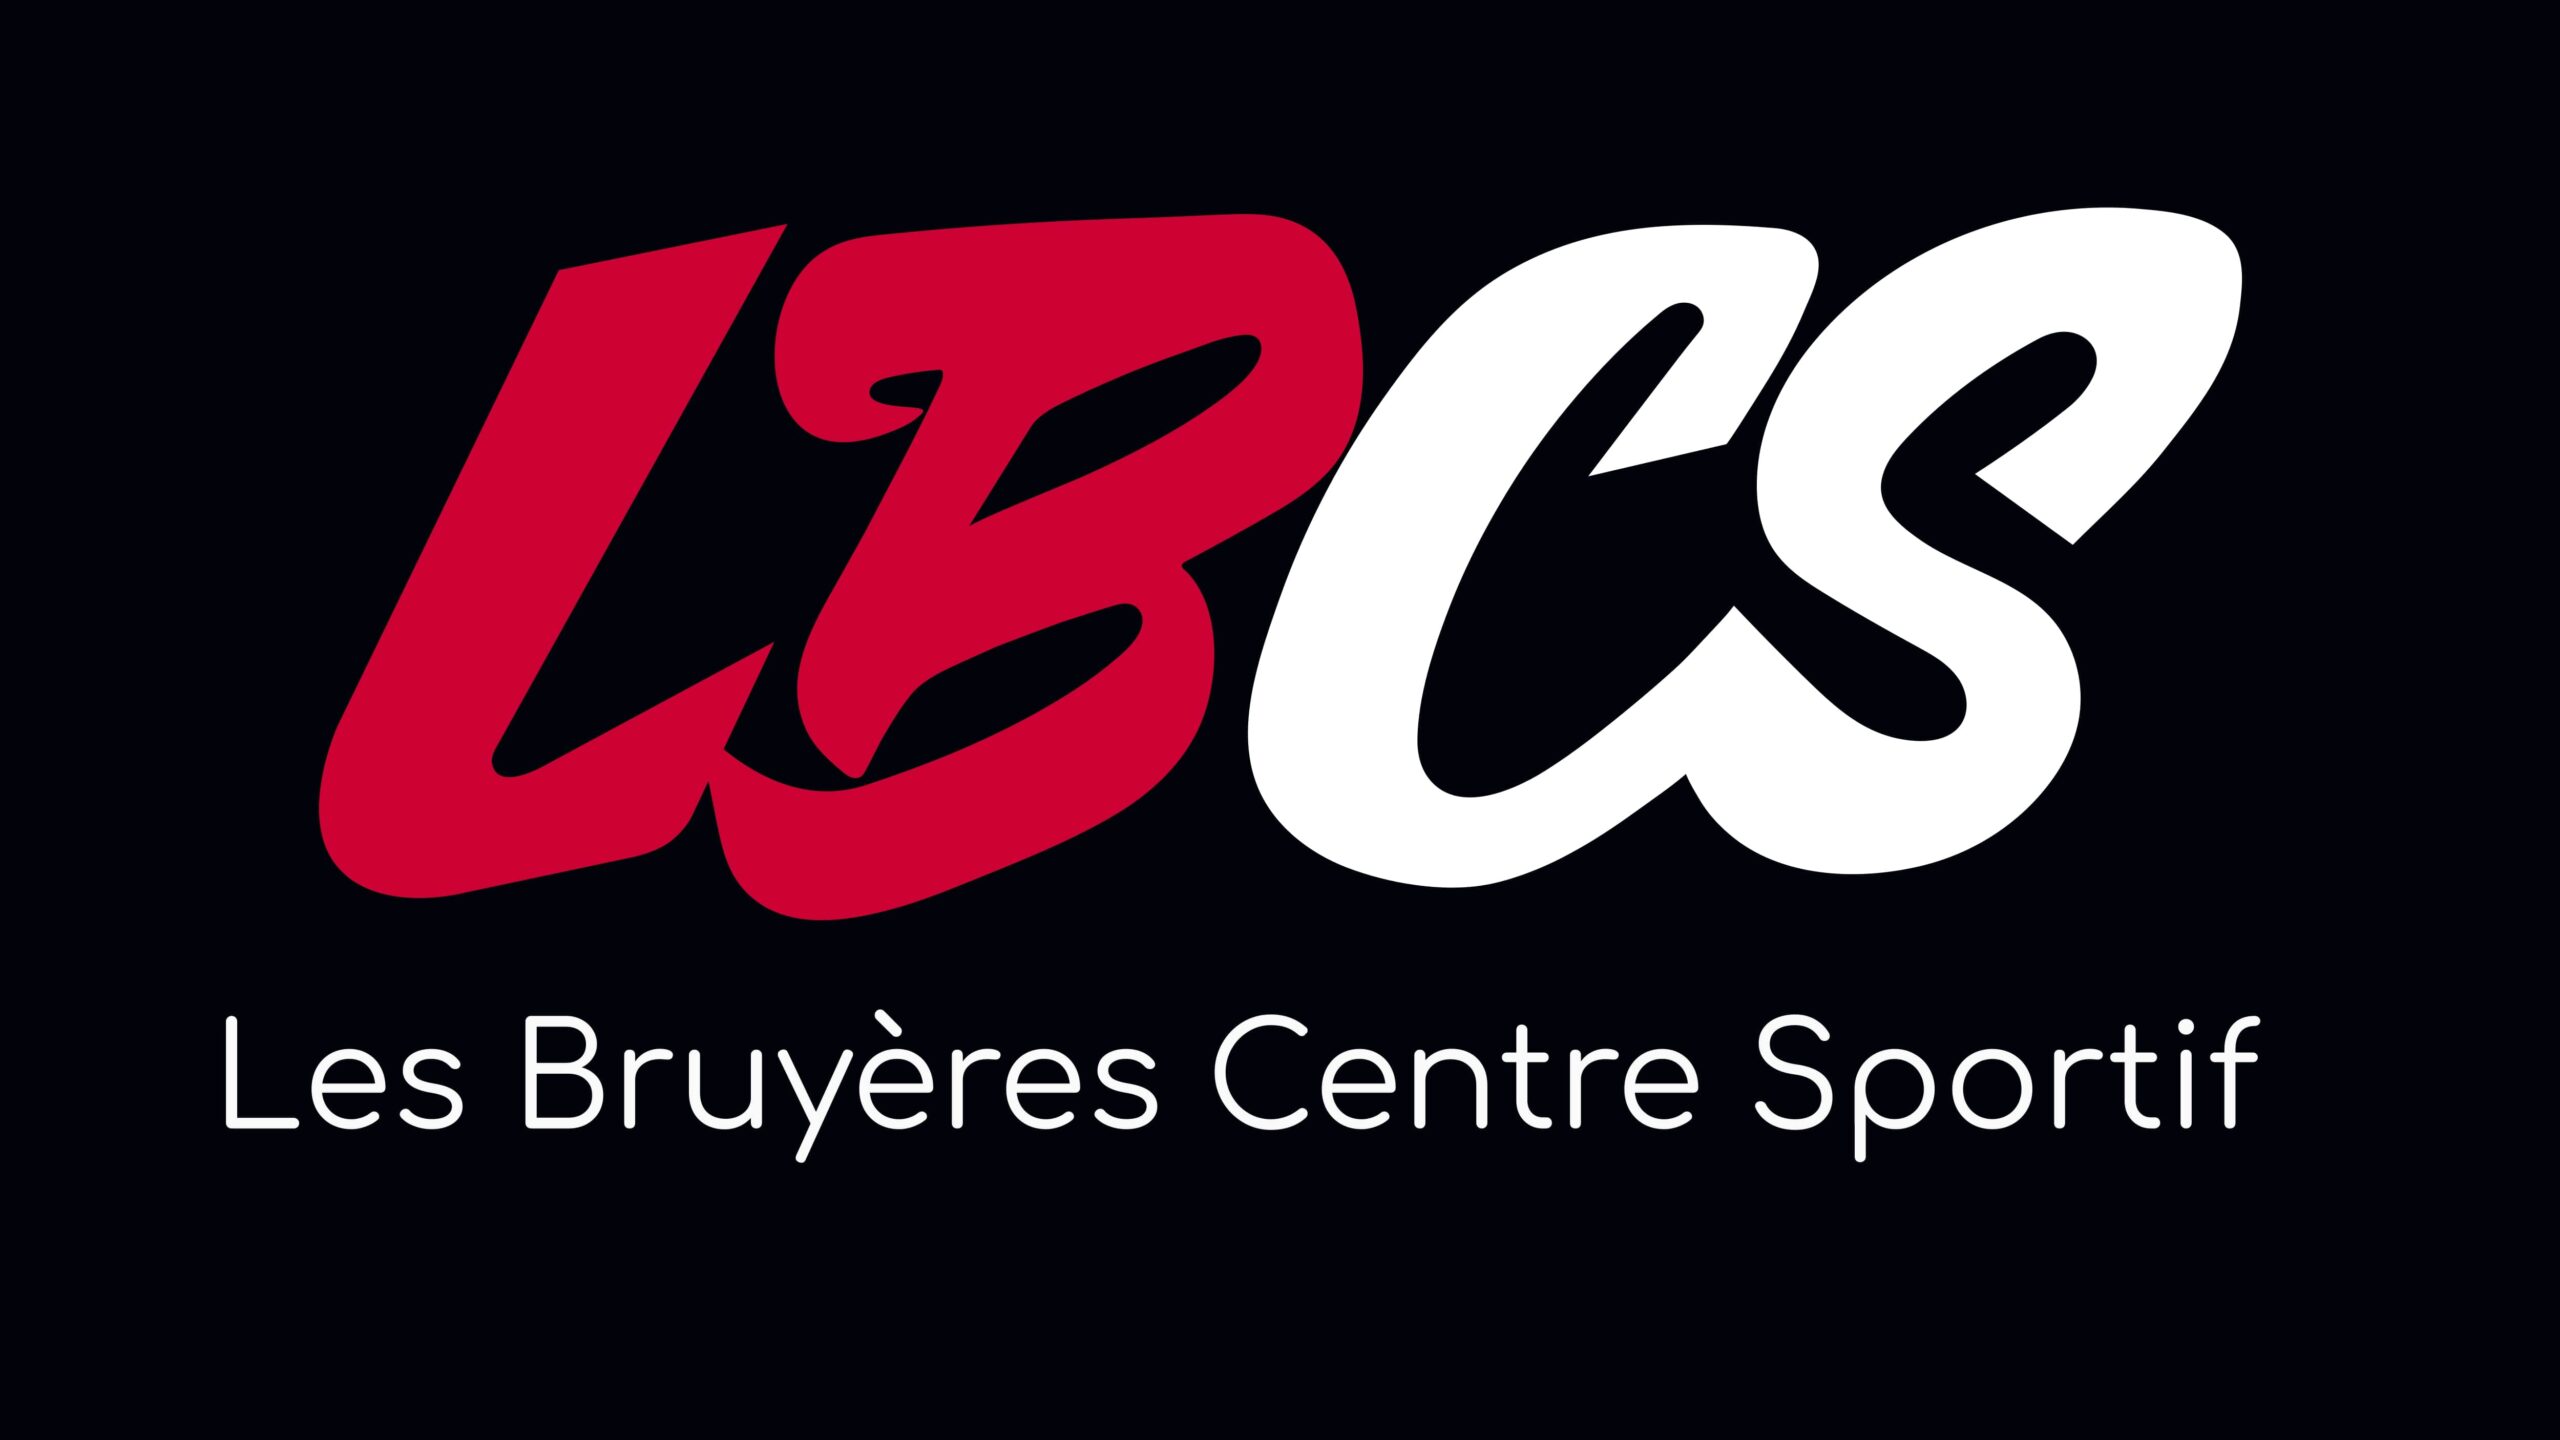 Les Bruyères -urheilukeskus Paussa hakee työntekijöitä!